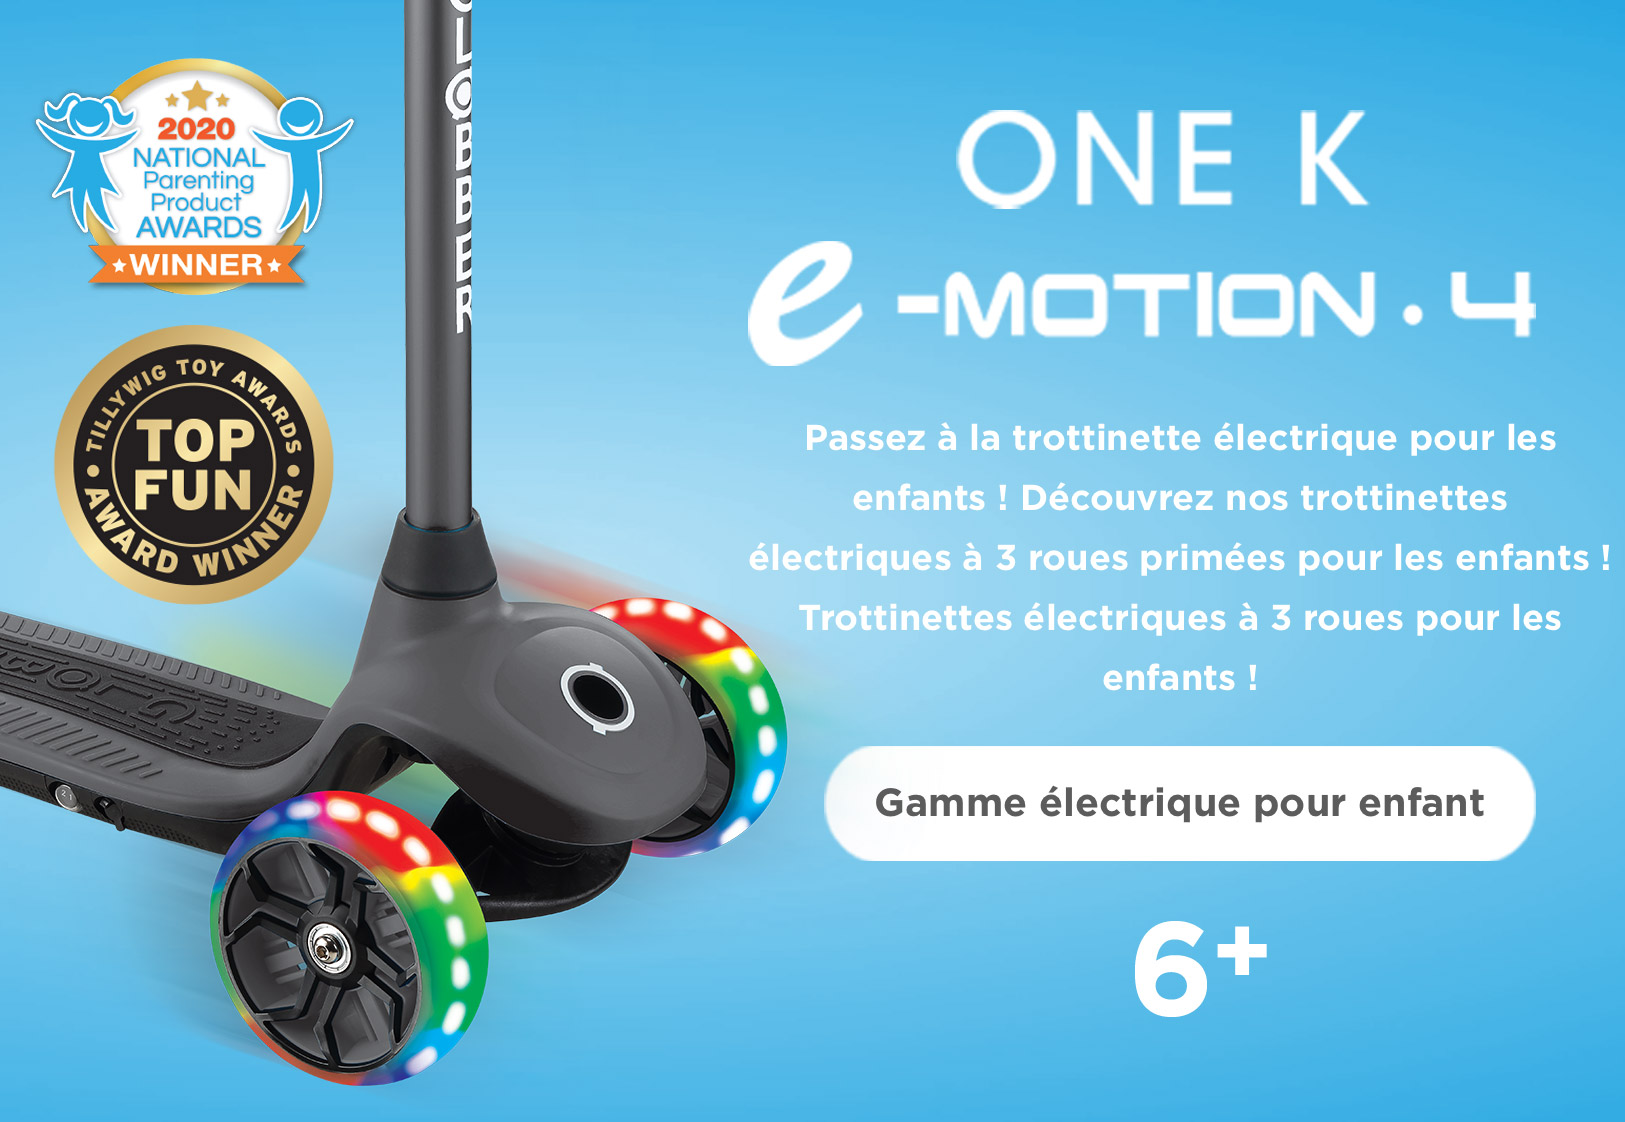 Trottinettes électriques à 3 roues pour les enfants